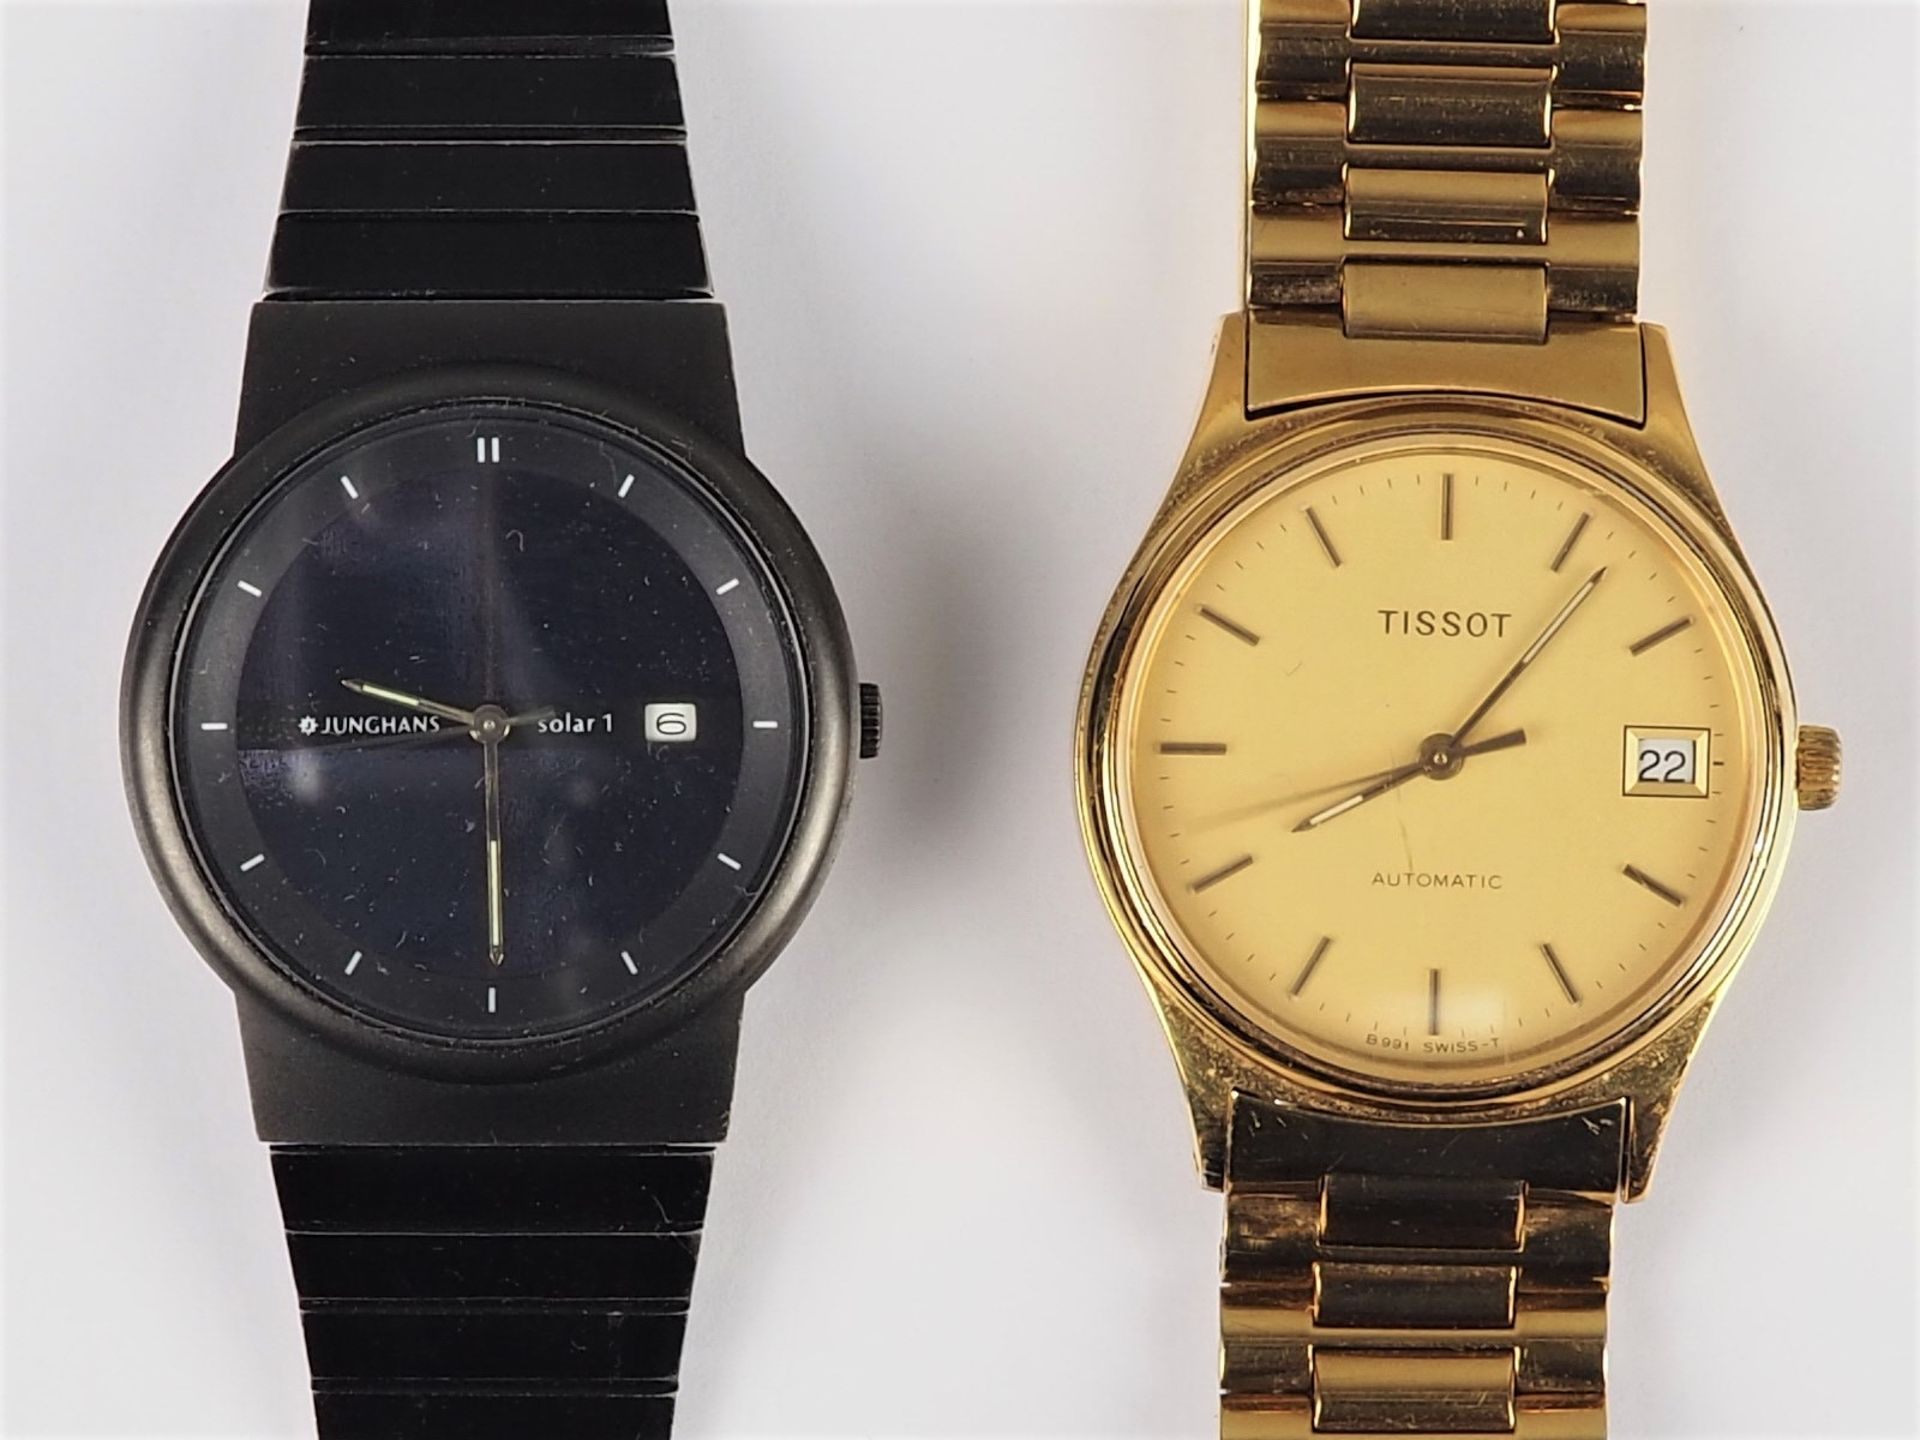 2 Armbanduhren, Tissot Automatik vergoldet und Junghans Solar 1